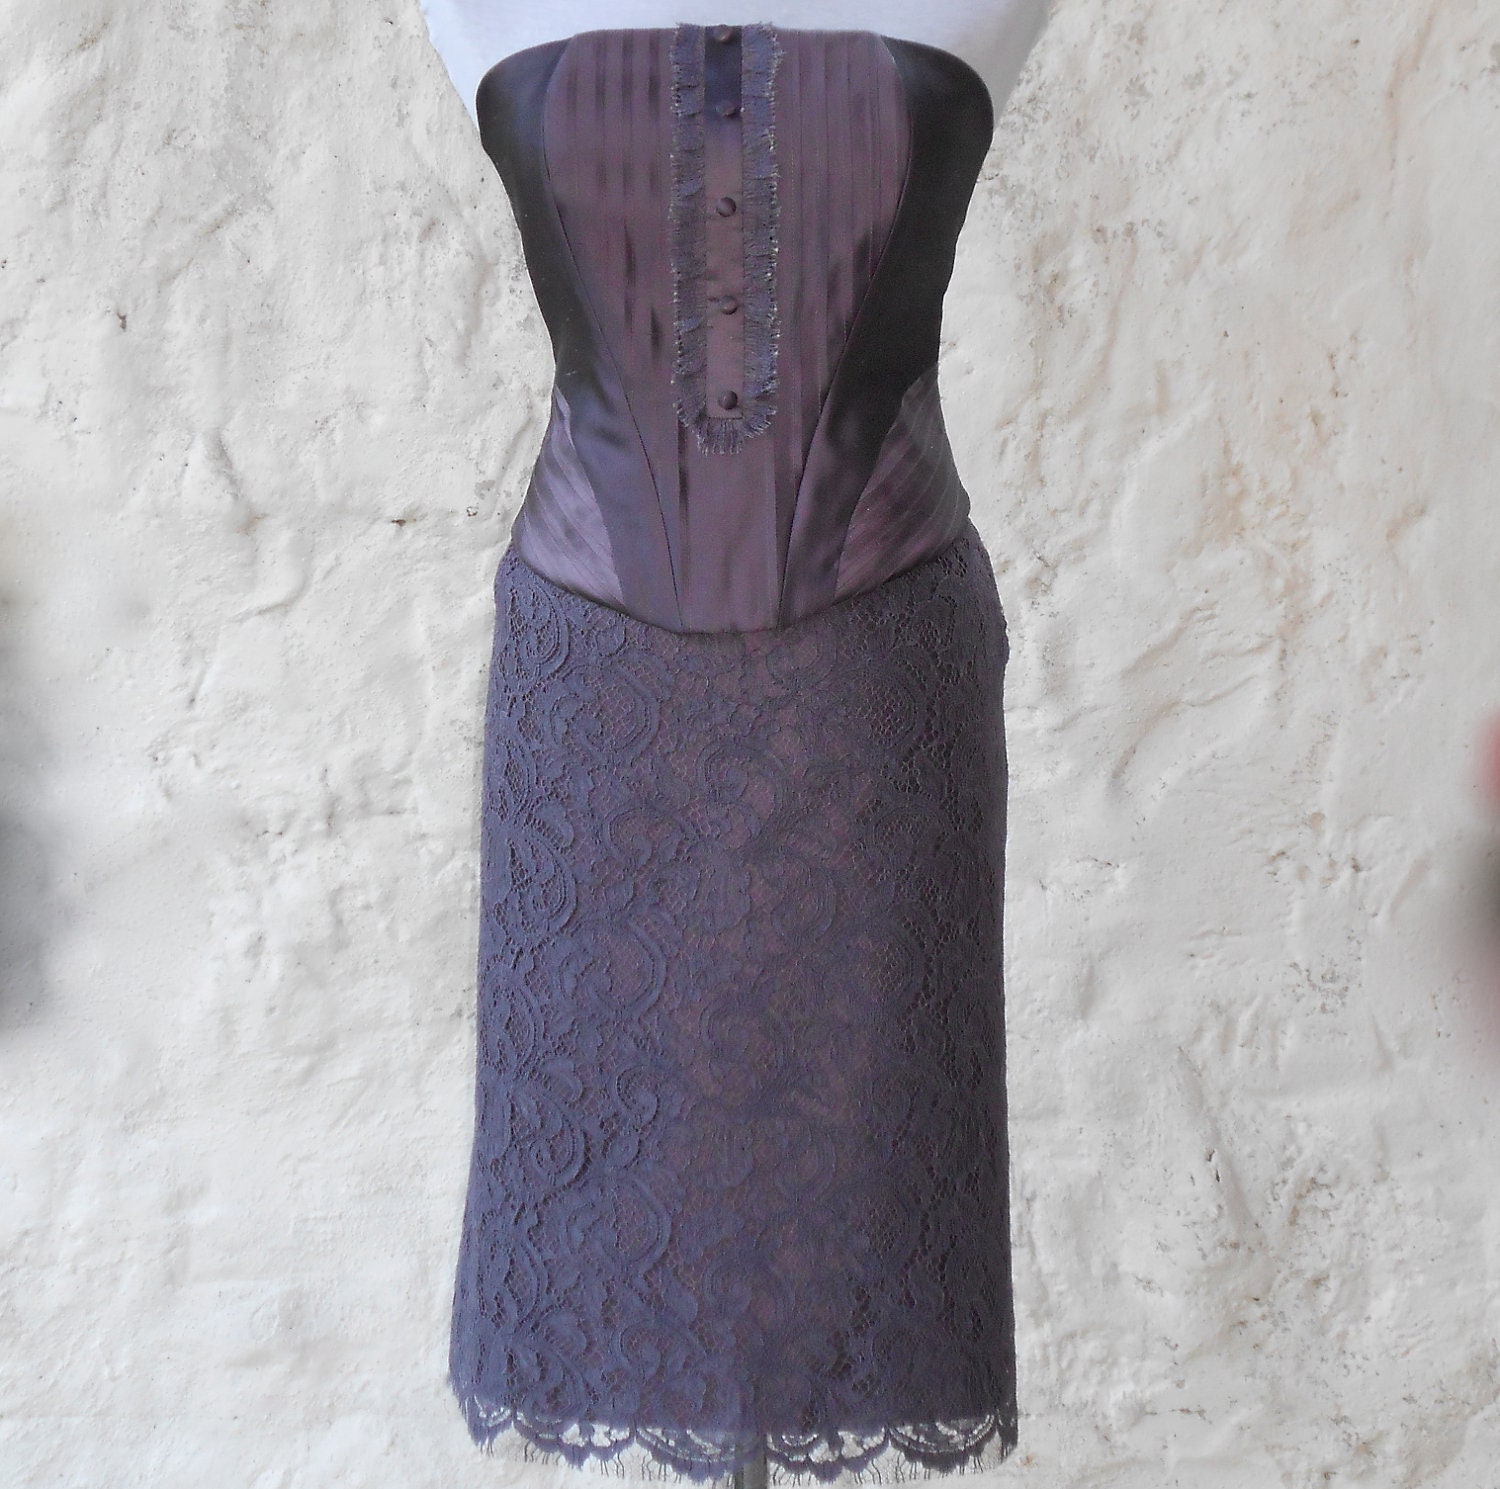 Deep purple / plum - boned - silk corset top - high fashion - steampunk - goth